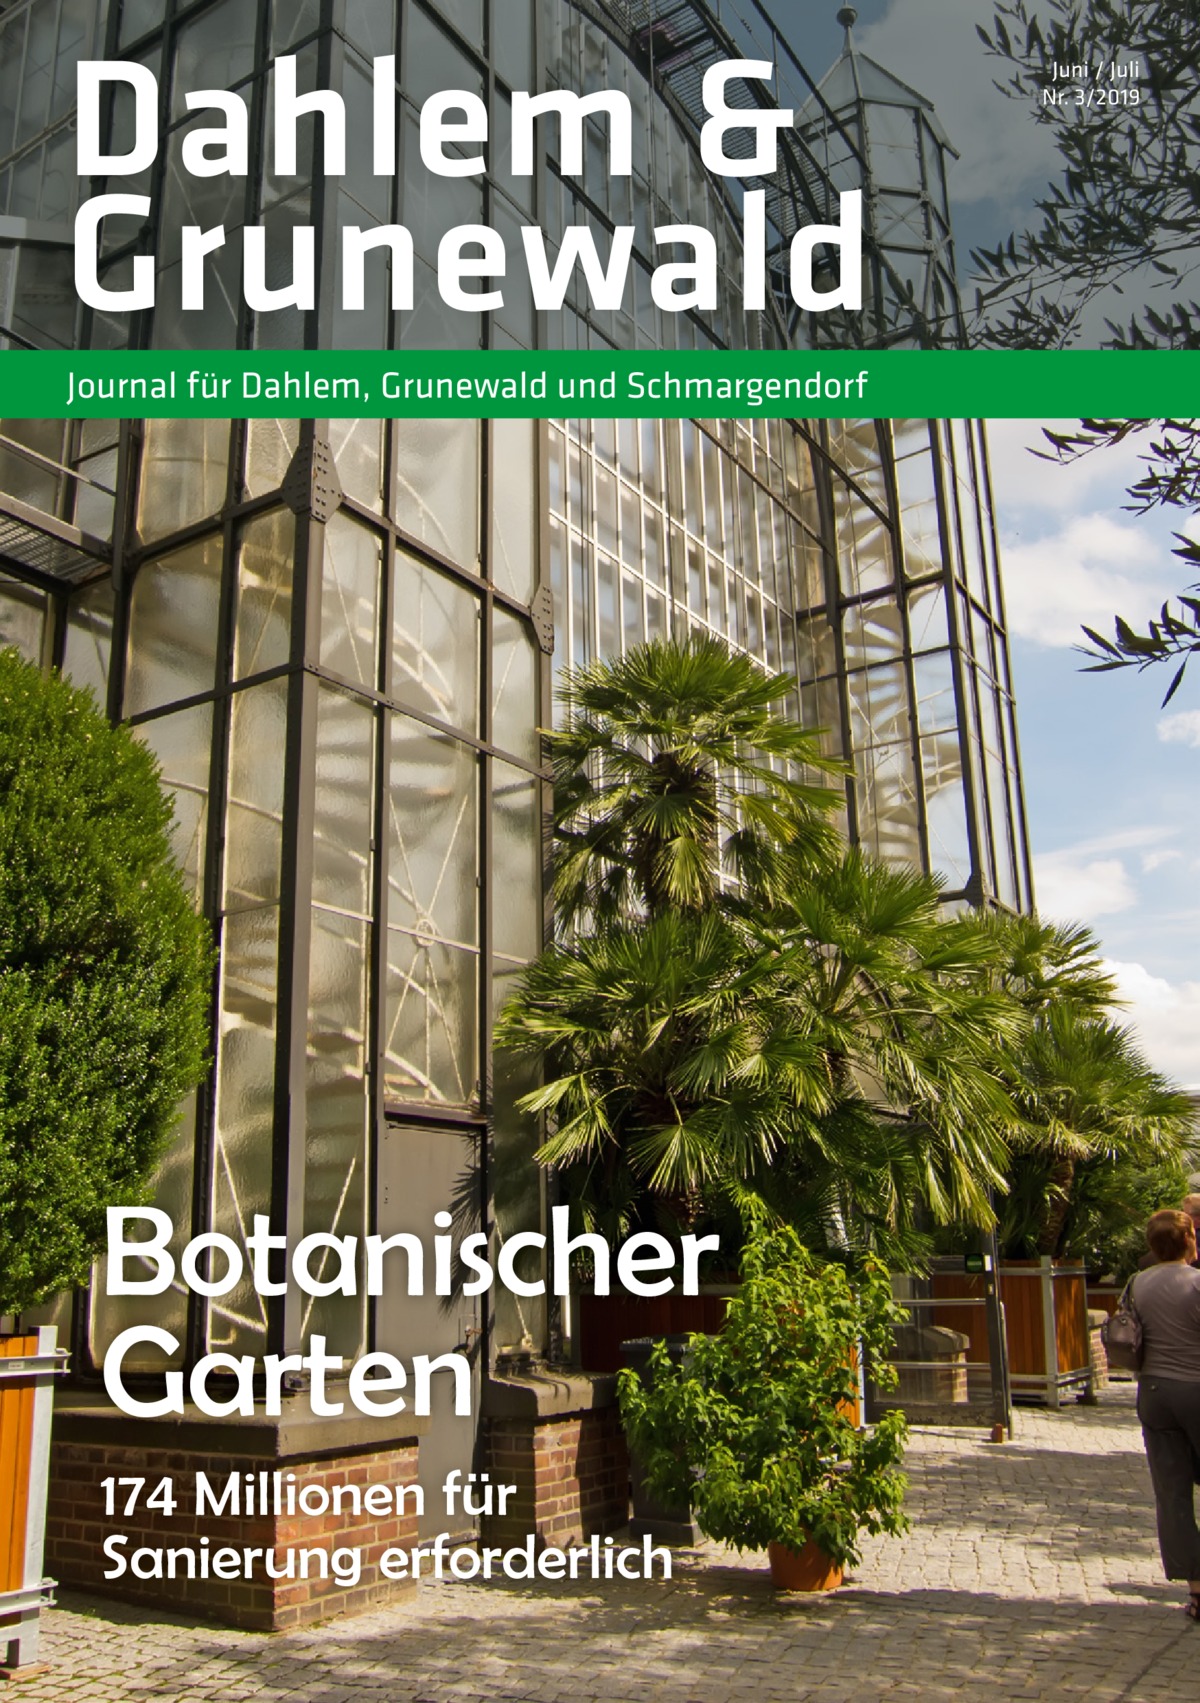 Dahlem & Grunewald Journal für Dahlem, Grunewald und Schmargendorf  Botanischer Garten 174 Millionen für Sanierung erforderlich  Juni / Juli Nr. 3/2019